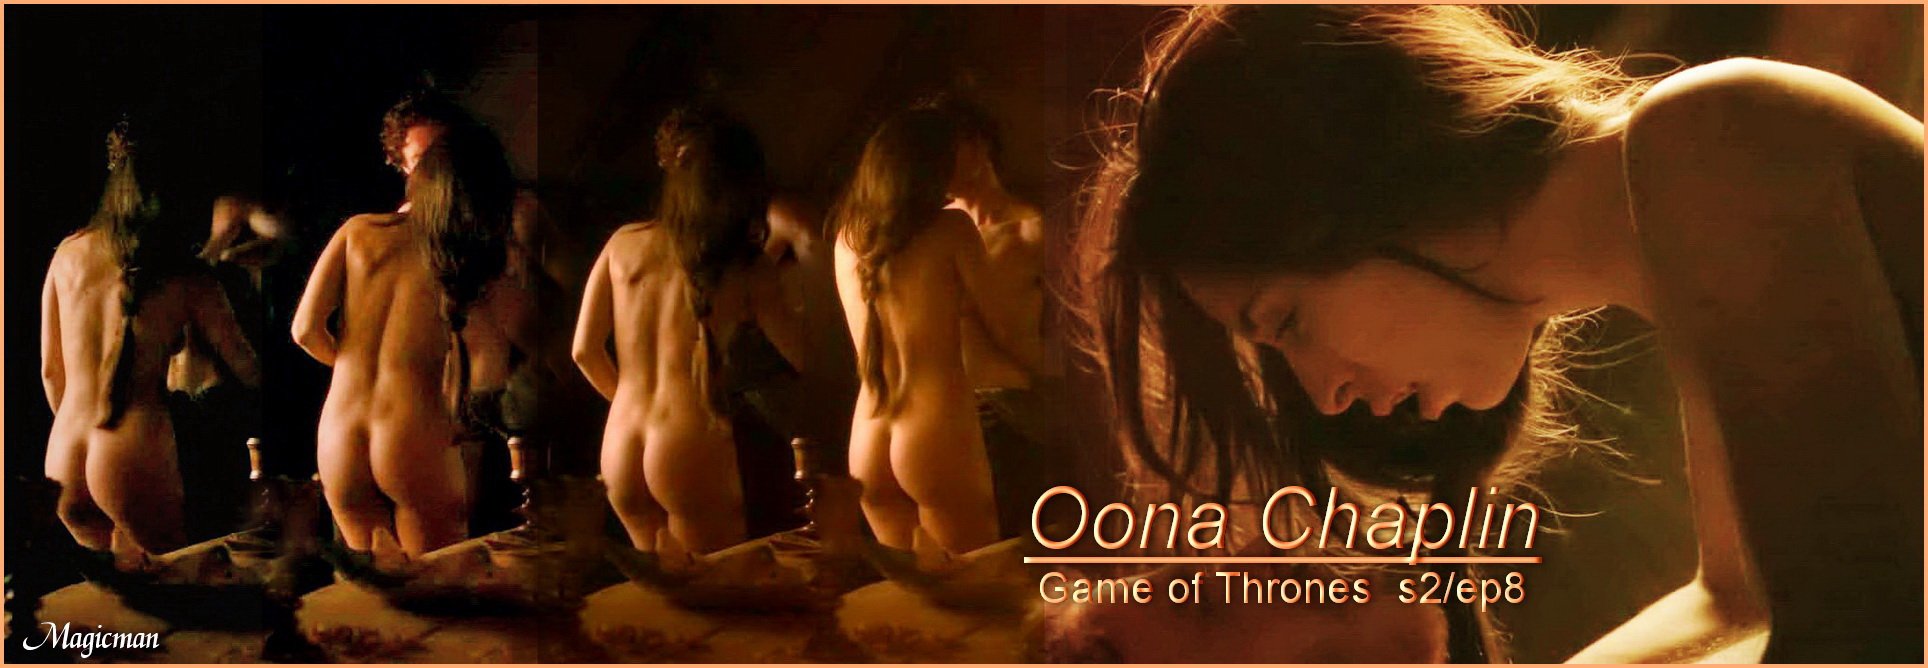 Oona chaplin game of thrones nude